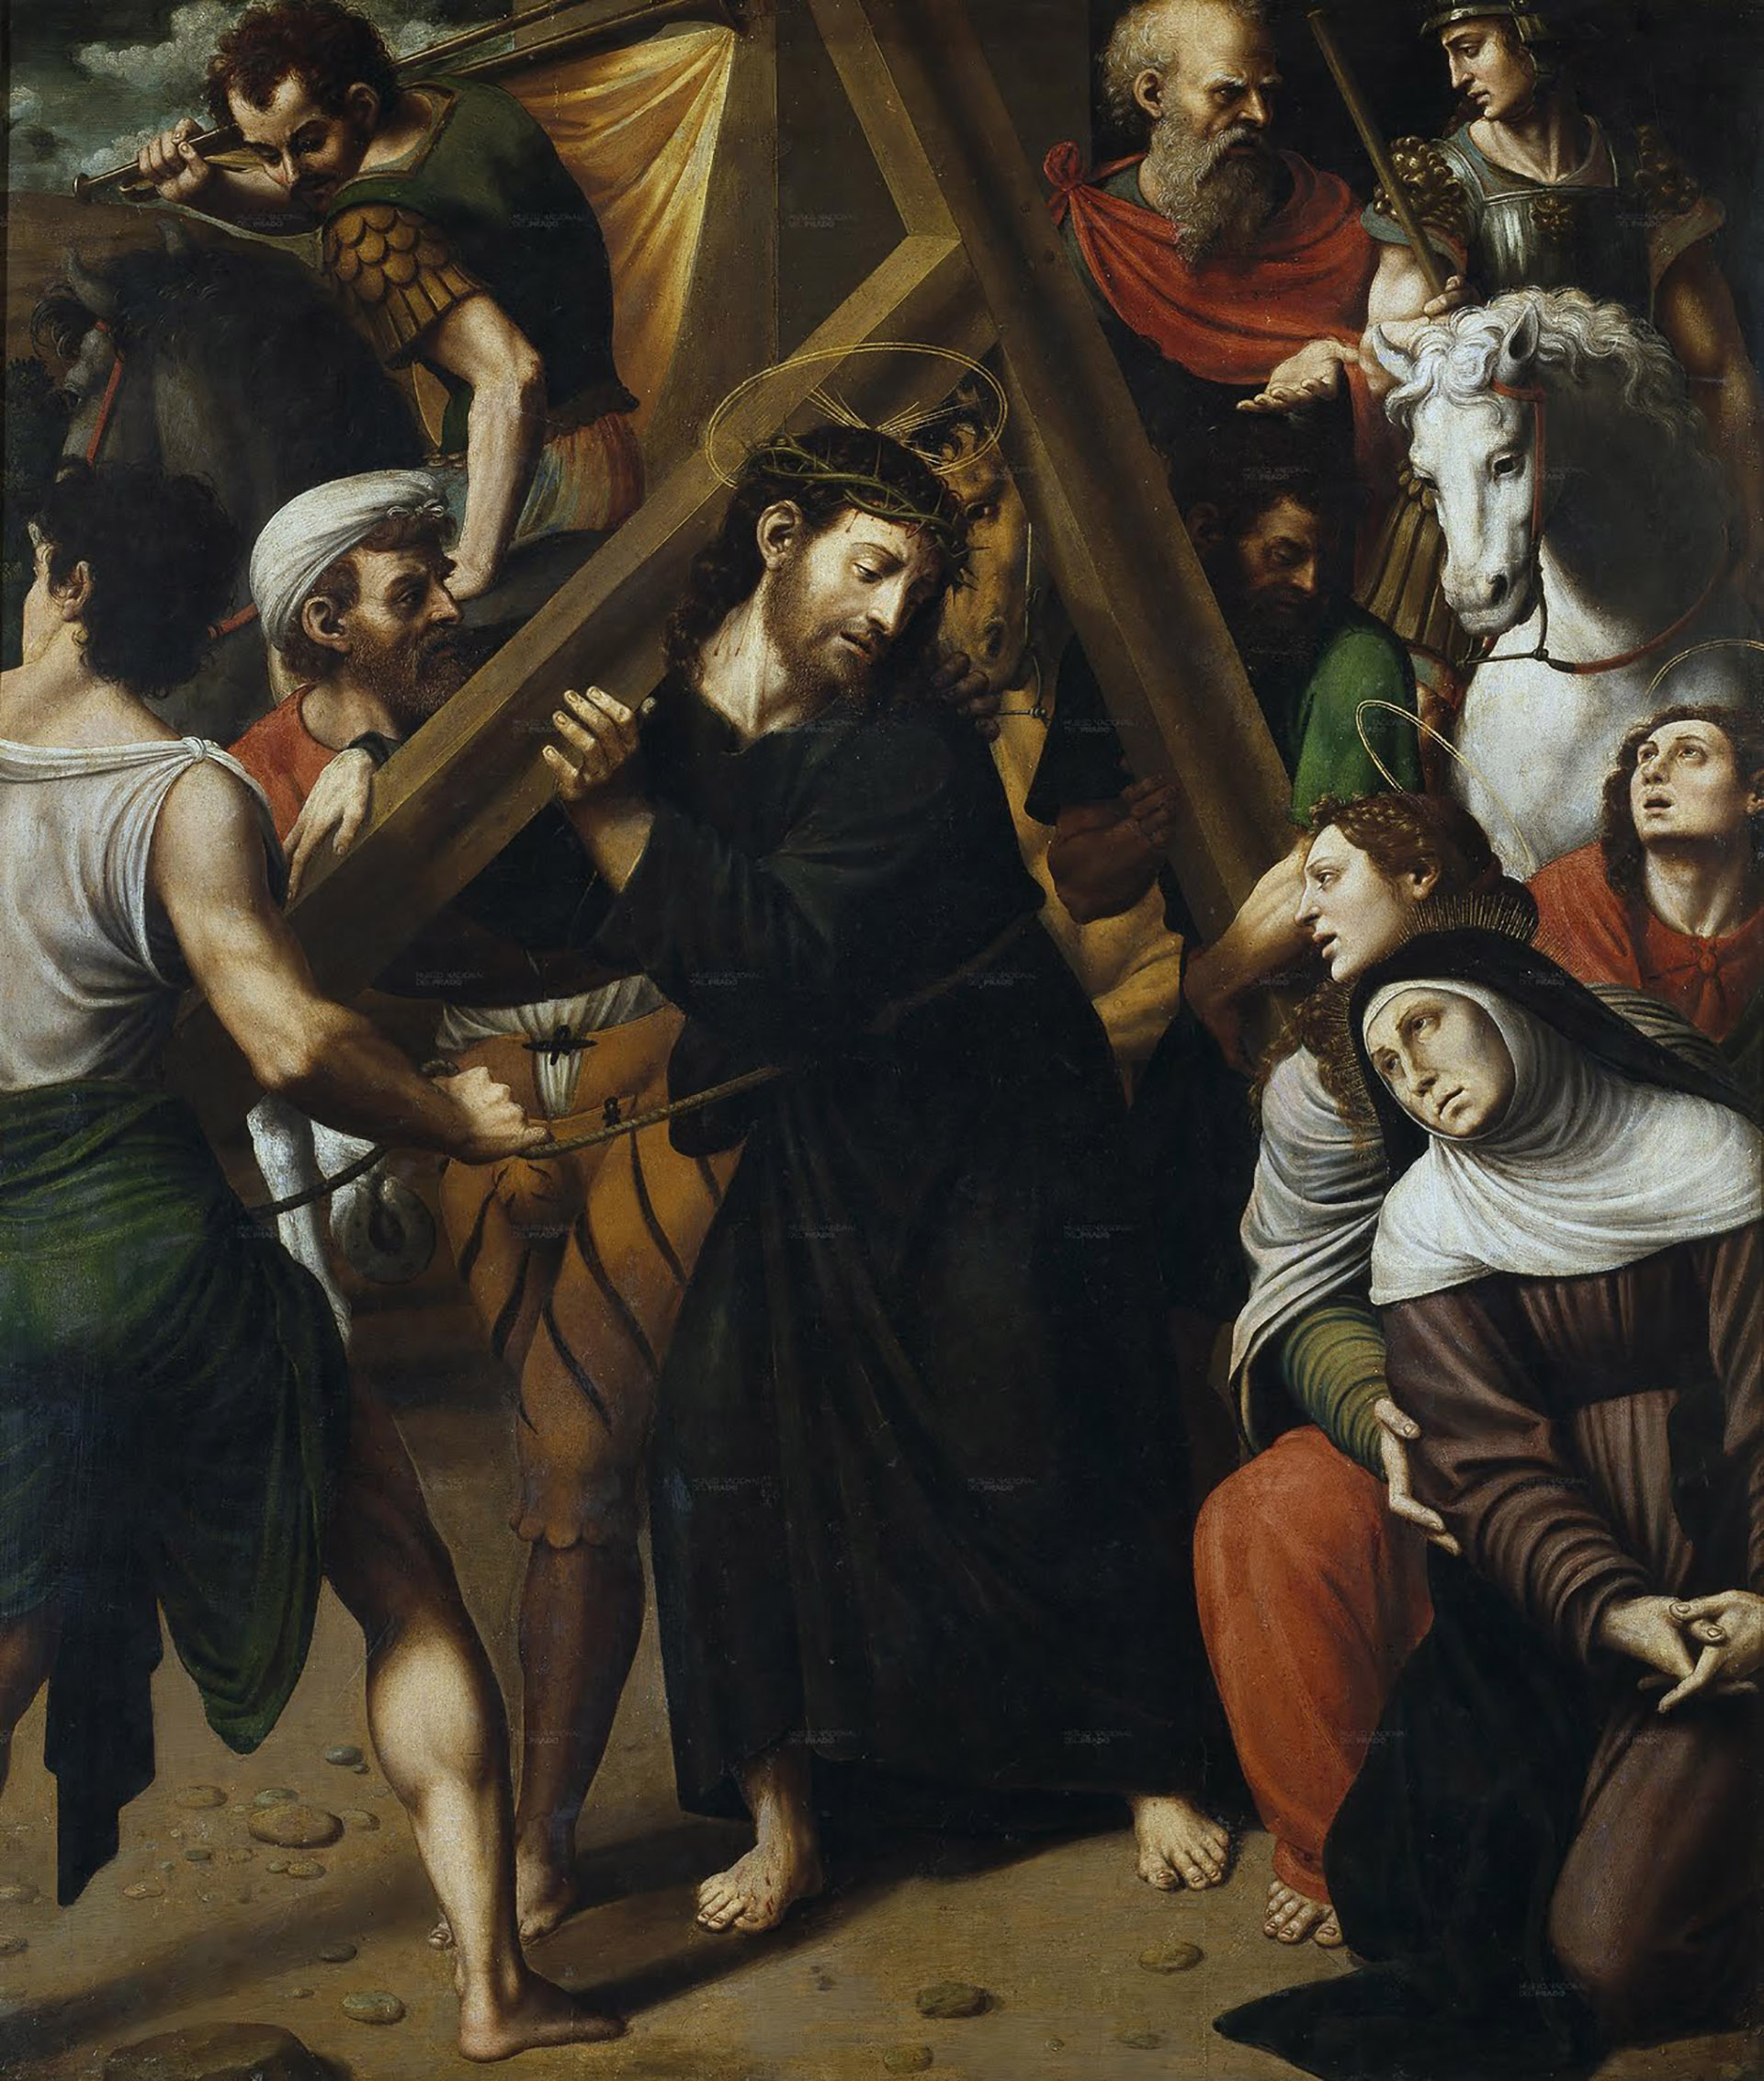 Cristo en el Camino del Calvario es una pintura óleo sobre tela realizada entre 1536 y 1538. El retablo fue encargado a Juan de Juanes , quien colaboró ​​en su realización con su padre, Vicente Macip 
 